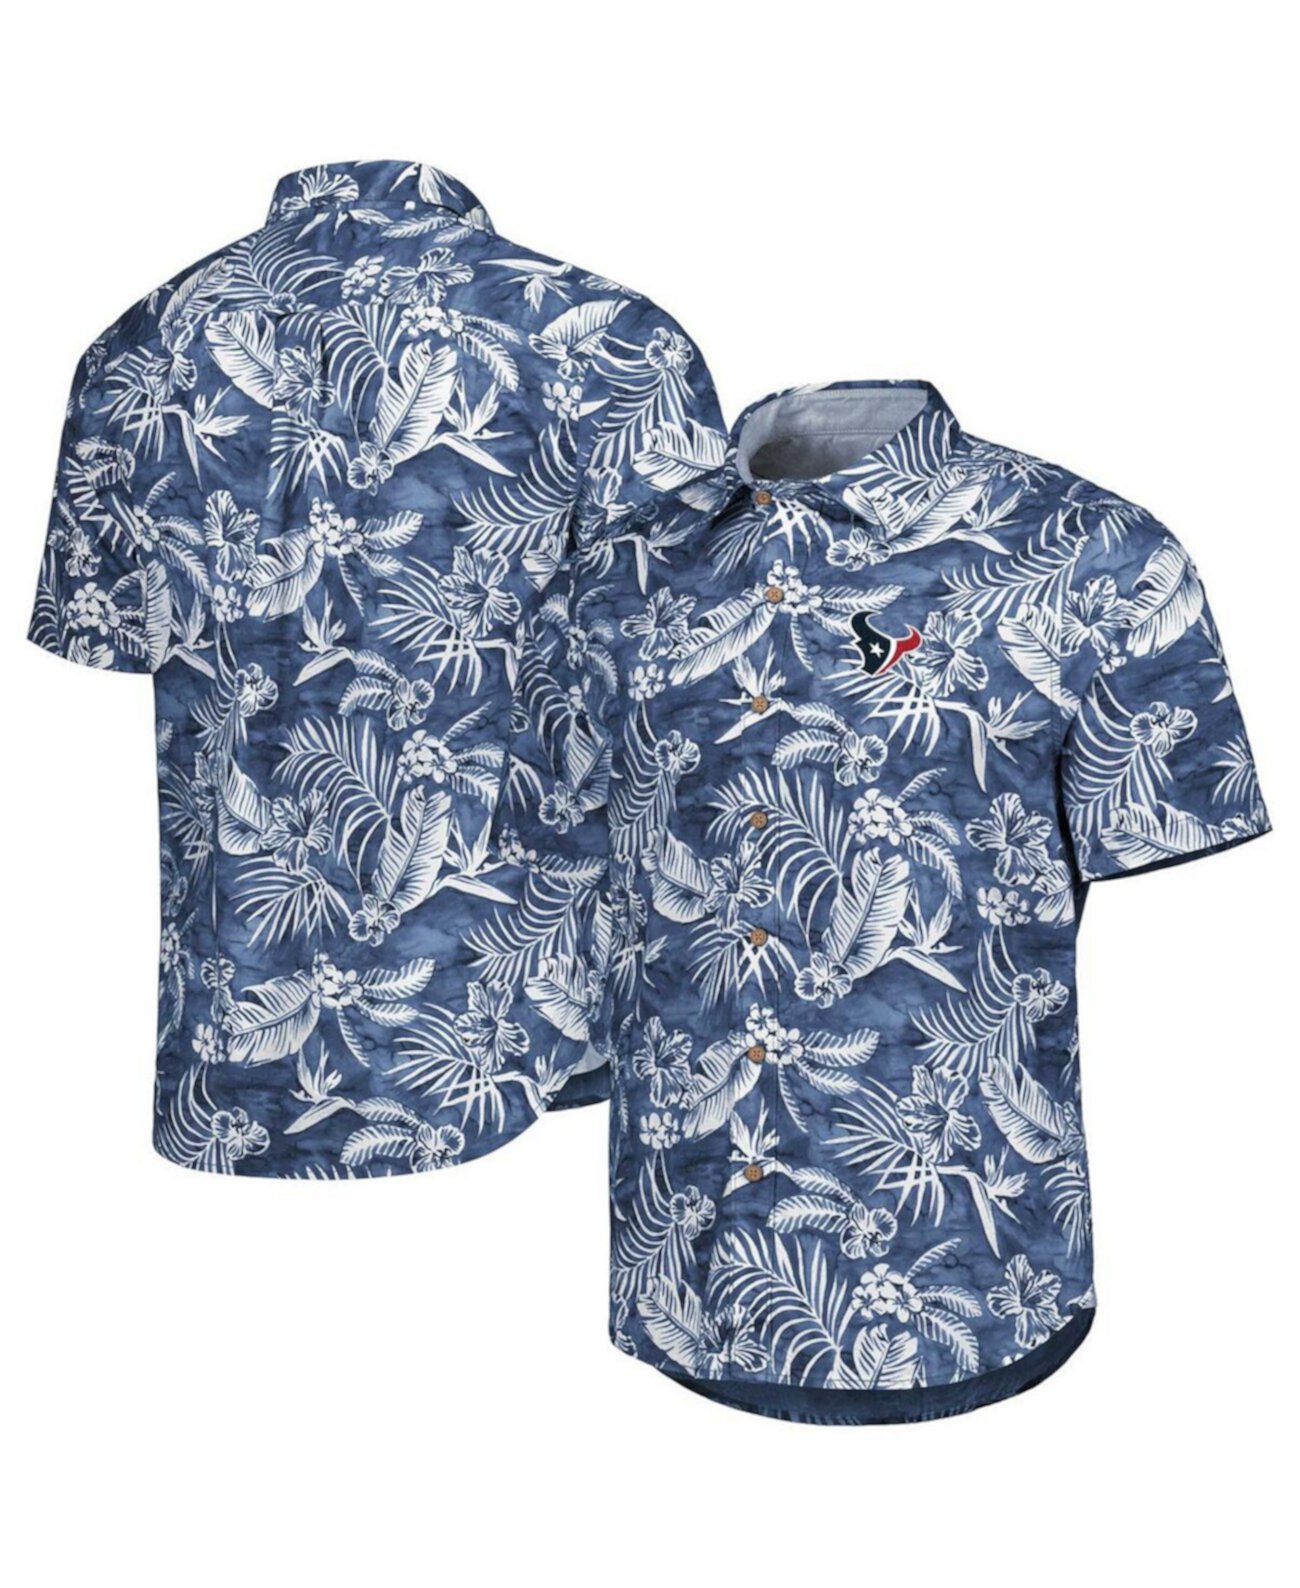 Мужская темно-синяя рубашка на всех пуговицах Houston Texans Aqua Lush Tommy Bahama